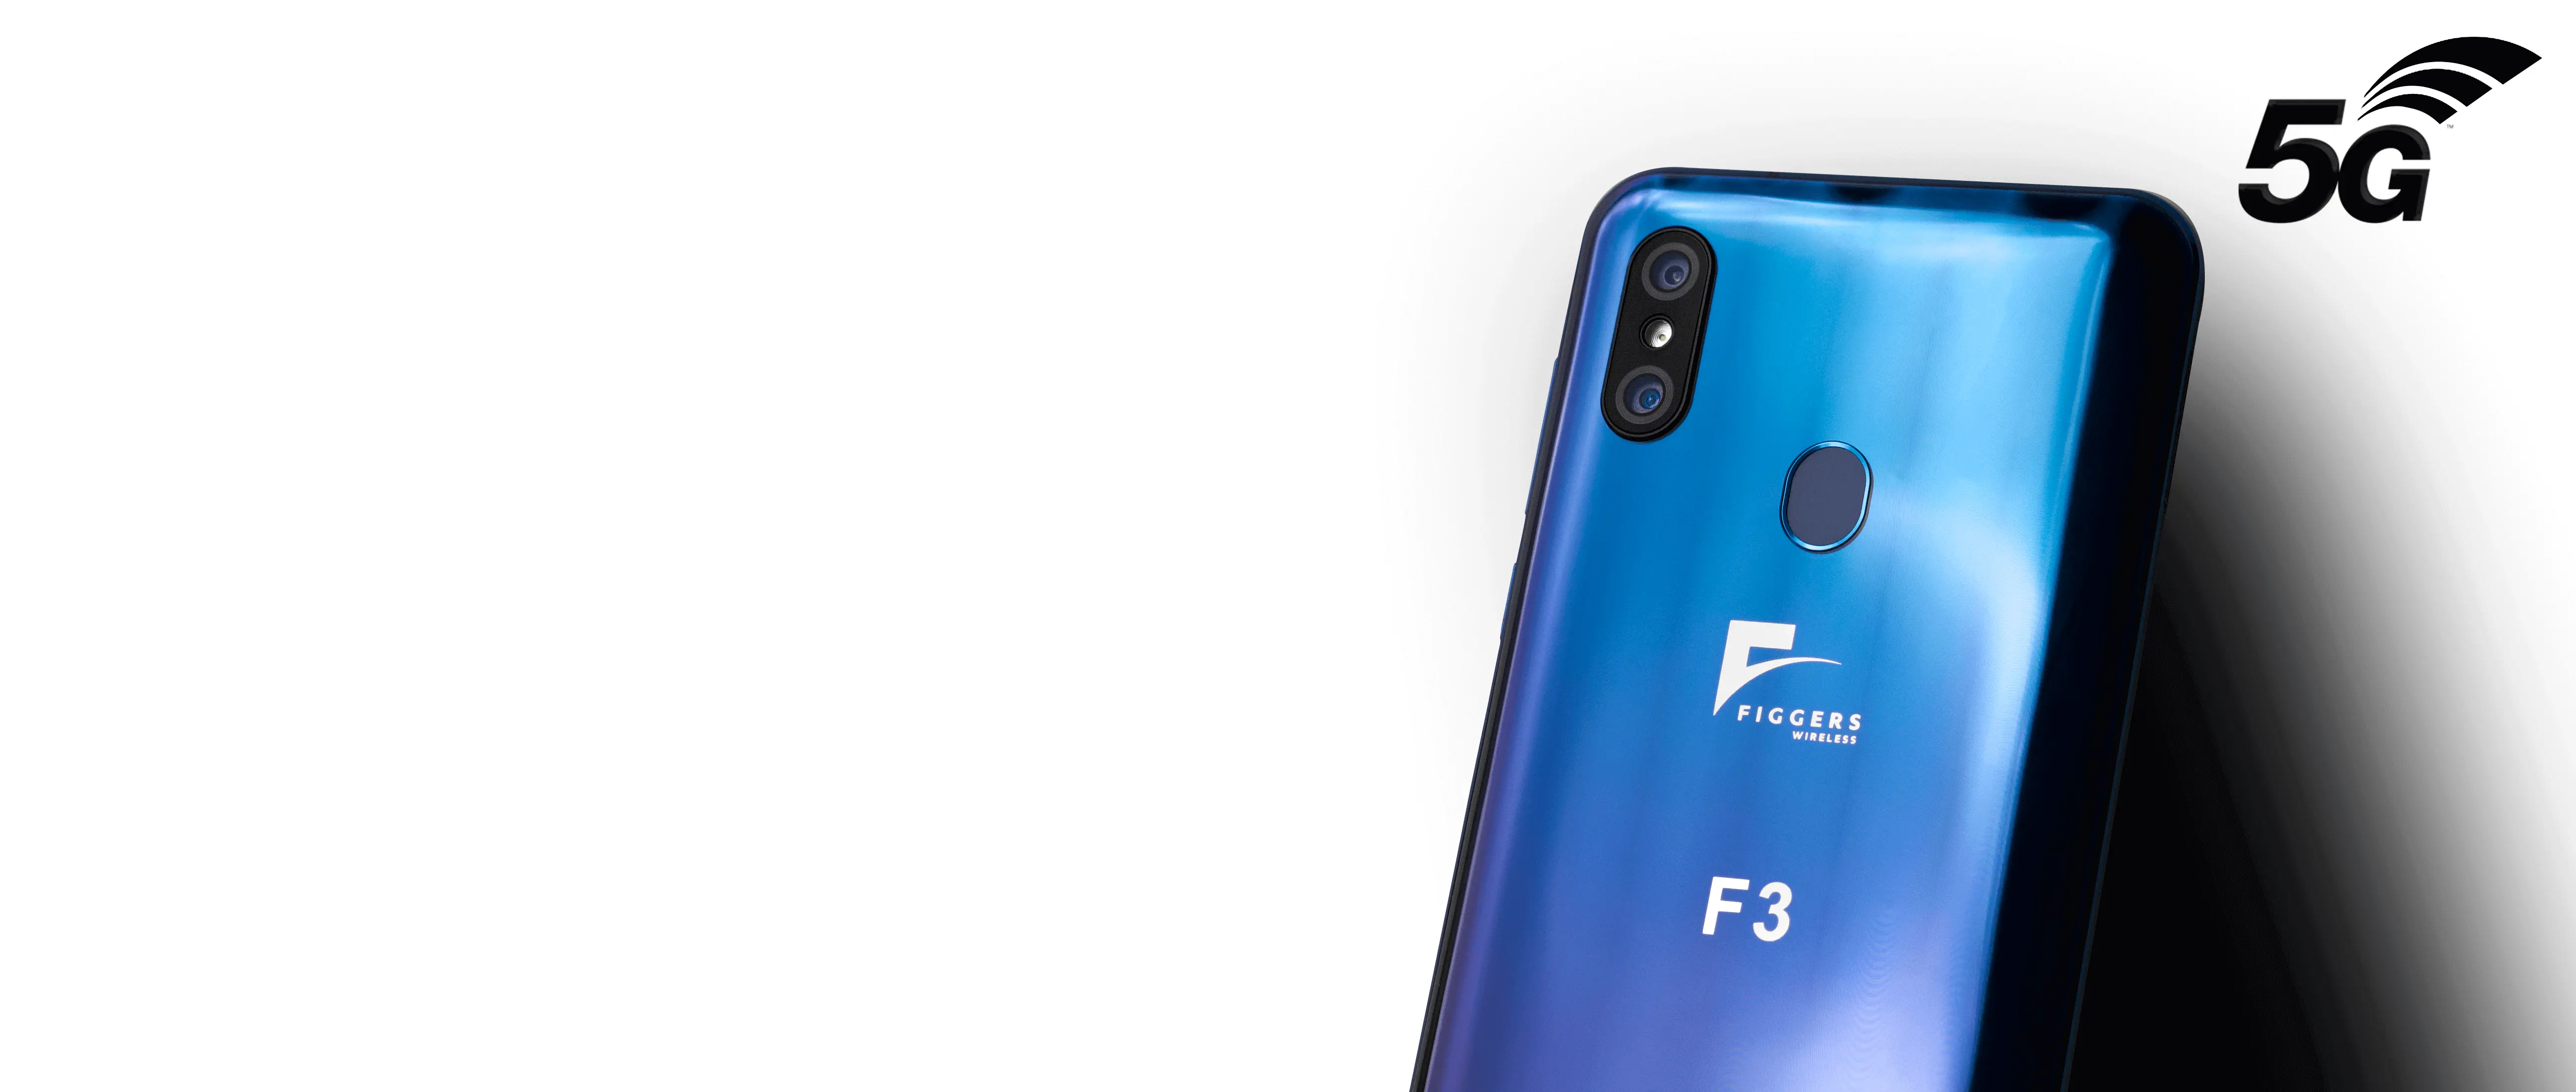 Figgers F3 es el primer smartphone 5G con carga inalámbrica de hasta 5 metros